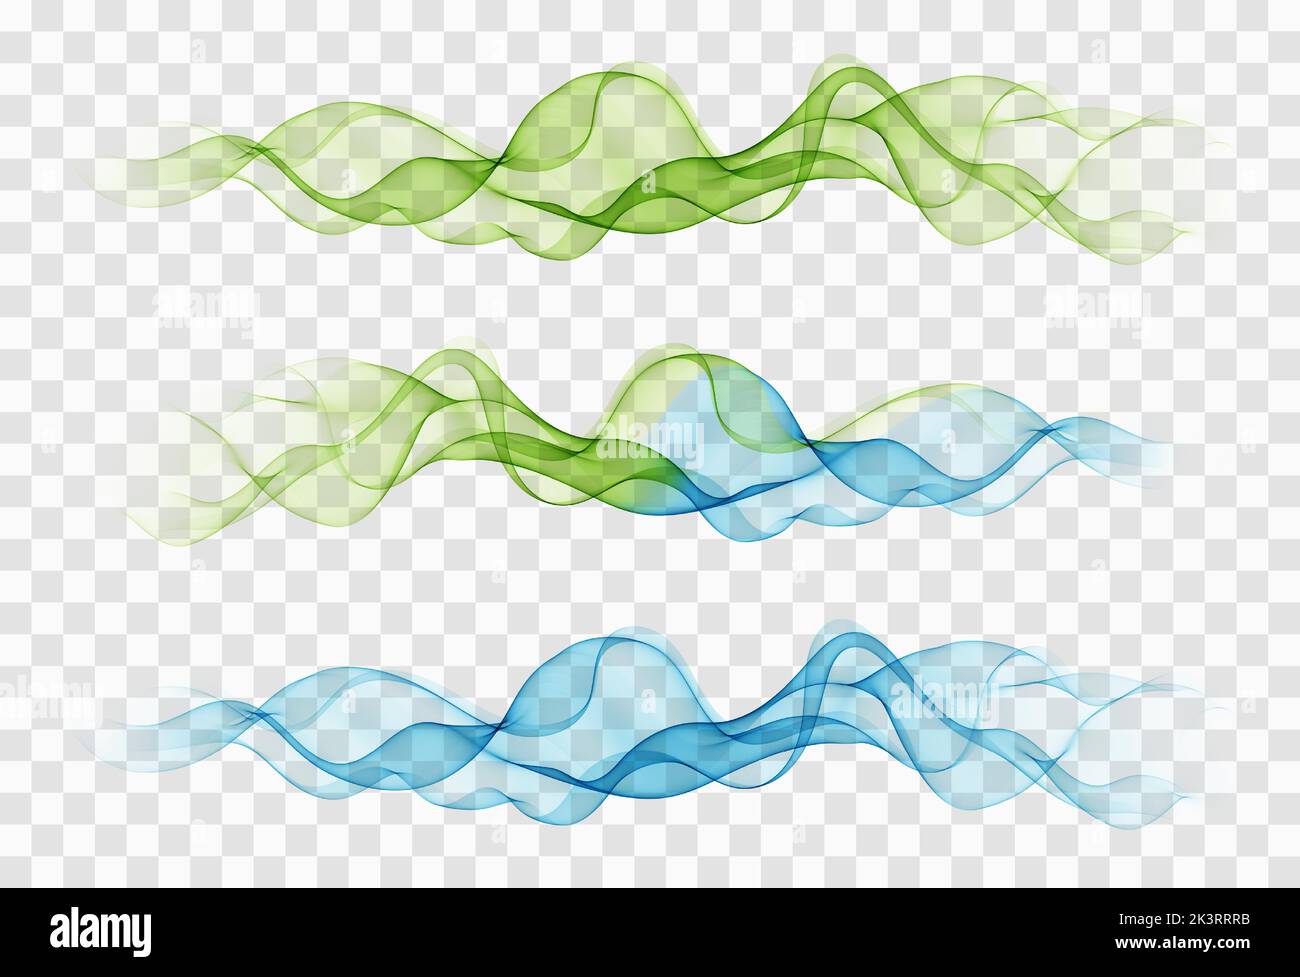 Helle grüne und blaue abstrakte Geschwindigkeitslinien fließen. Minimalistischer, frischer Swoosh, saisonaler Wellenübergang im Frühling, Trennvorlage. Vektorgrafik. Stock Vektor